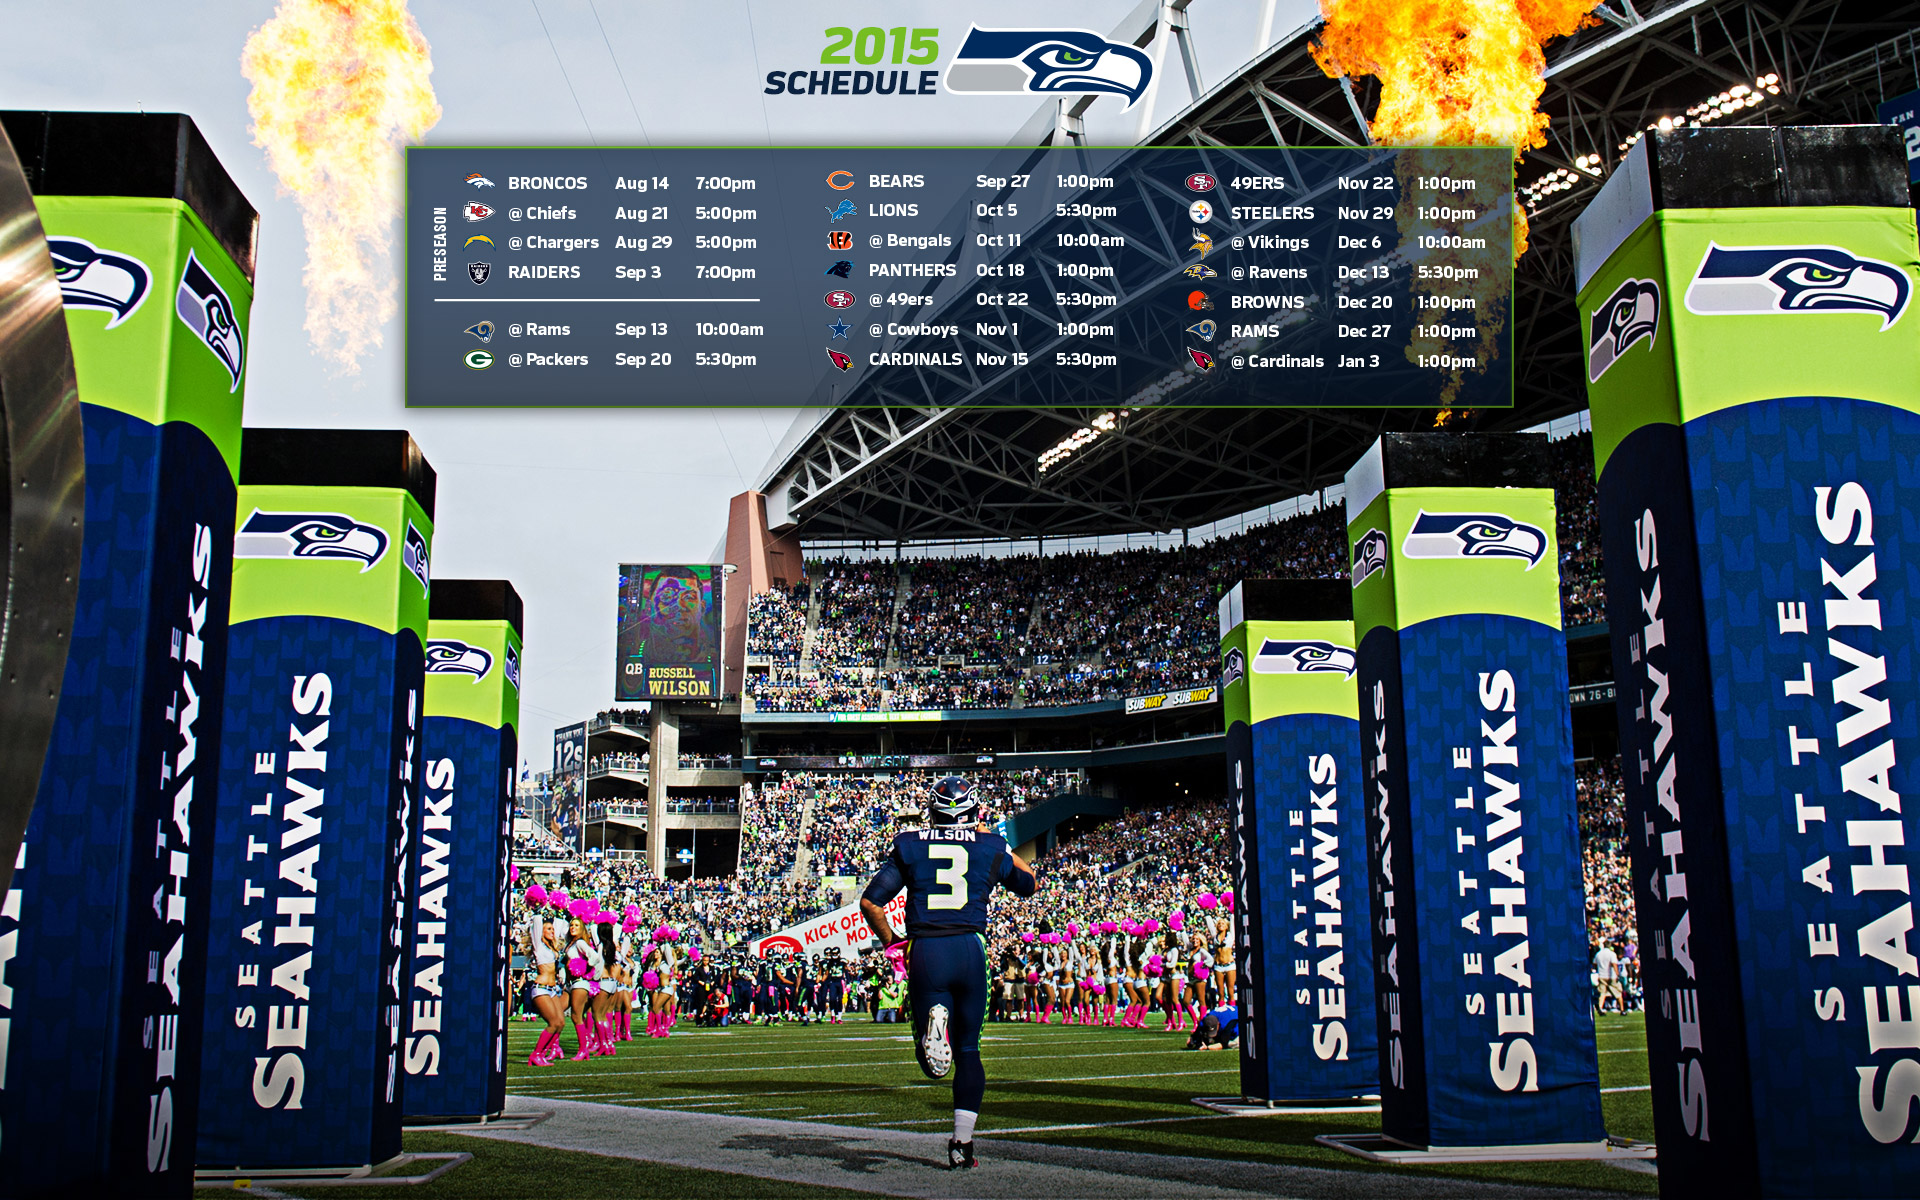 2015 schedule by seahawks com http www seahawks com wallpaper